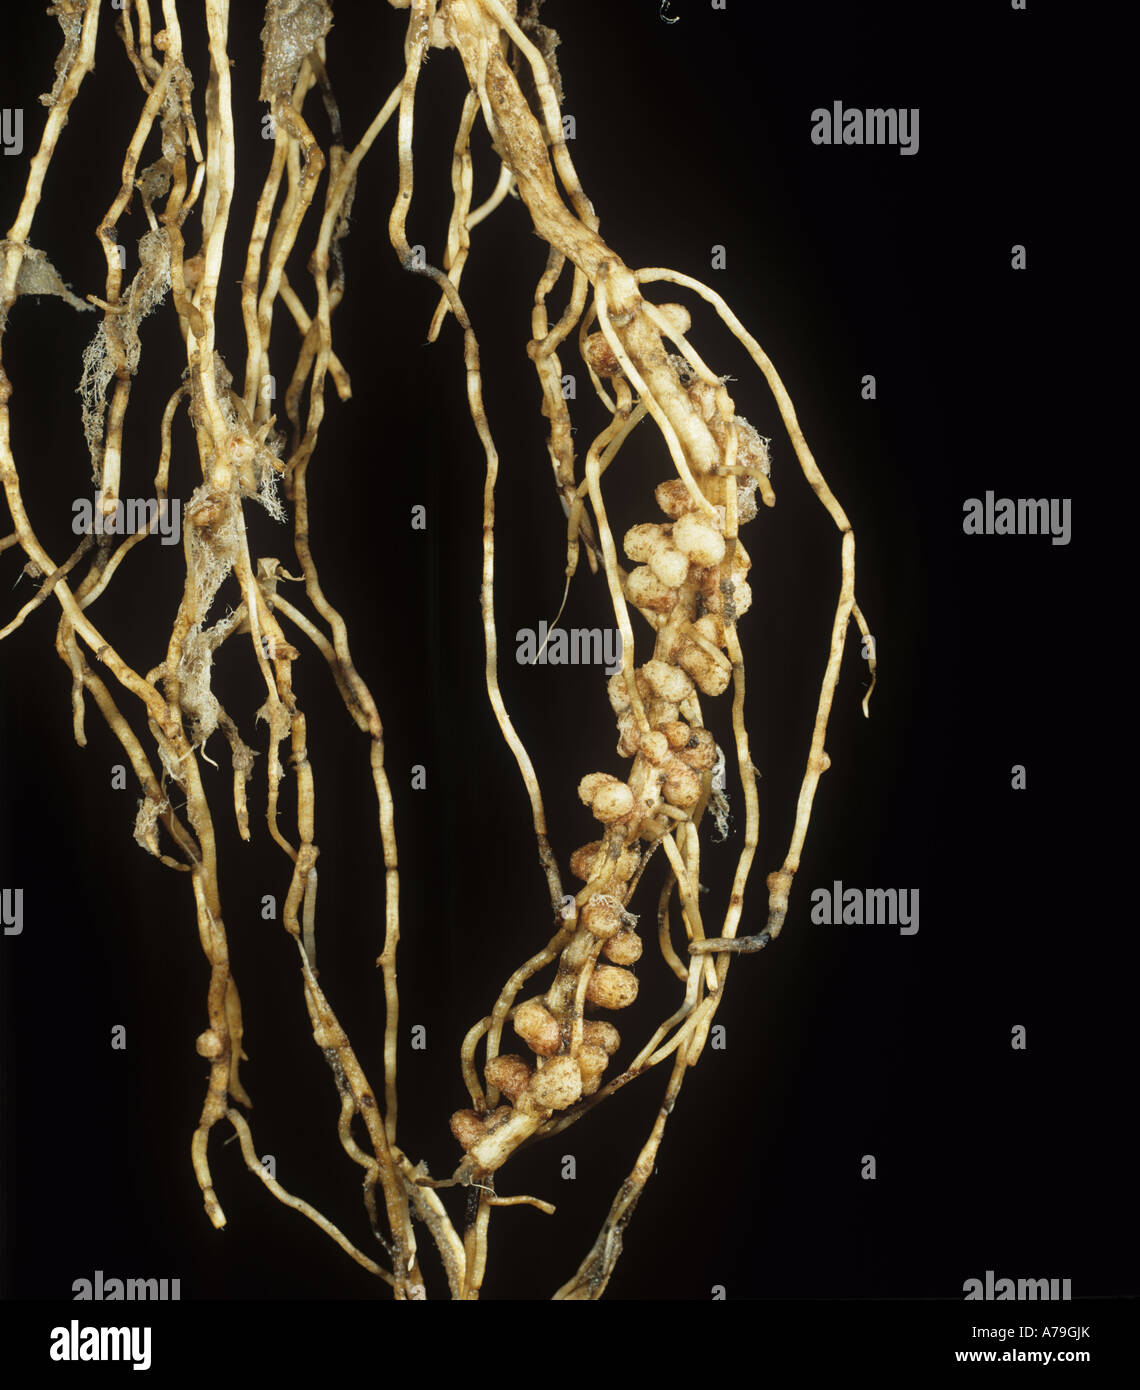 Rhizobium nódulos de raíz de Vicia faba haba para fijación de nitrógeno gaseoso Foto de stock